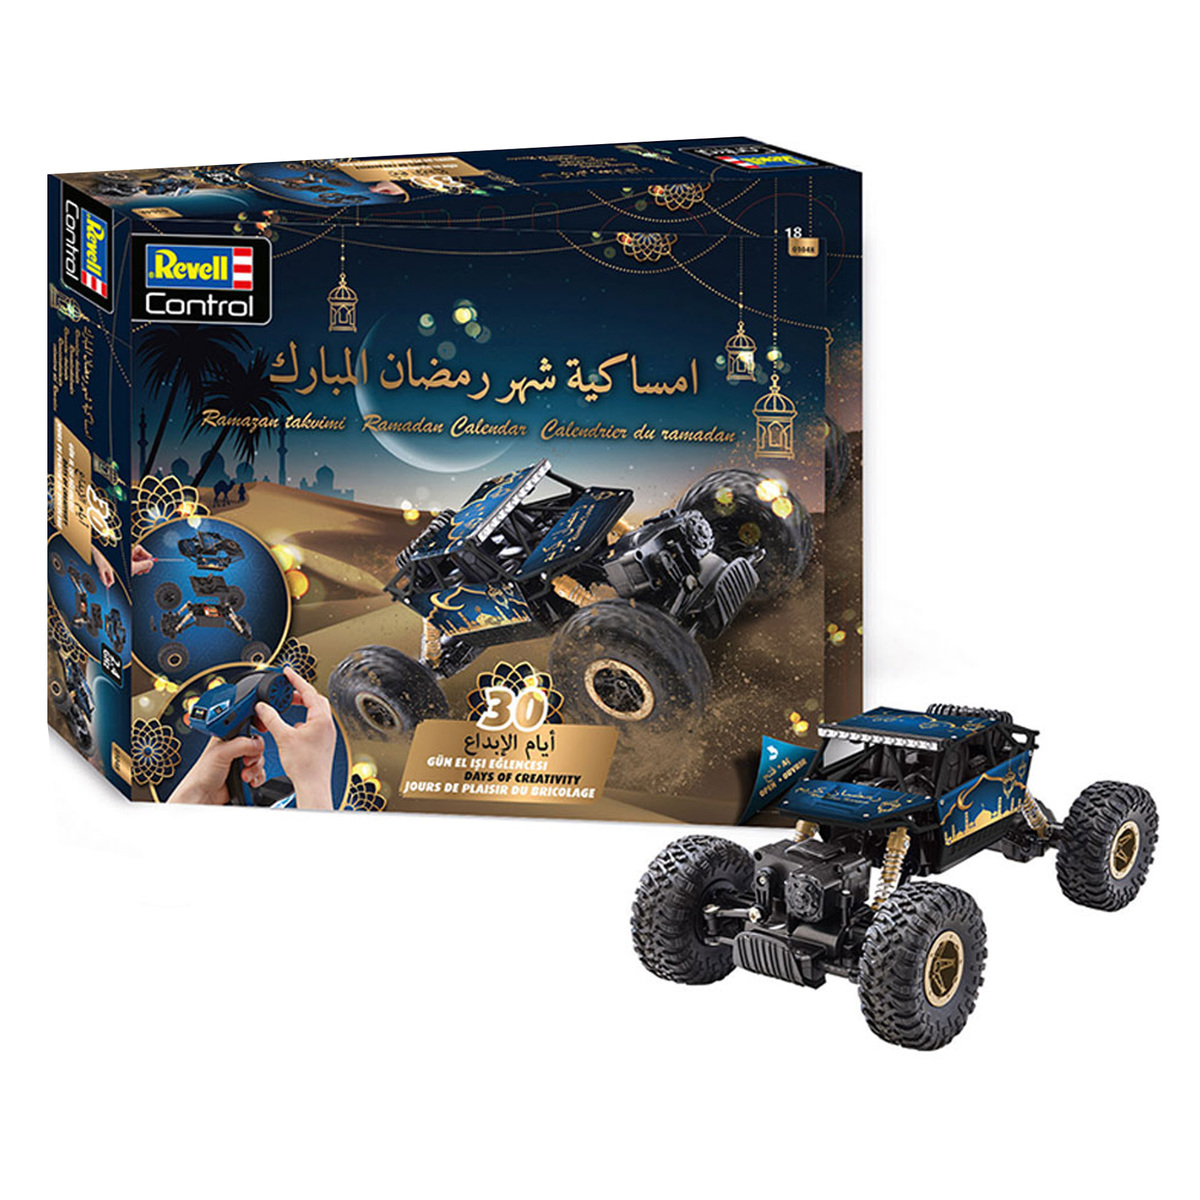 Revell Ramadan Calendar RC Crawler Car 1:10  01048